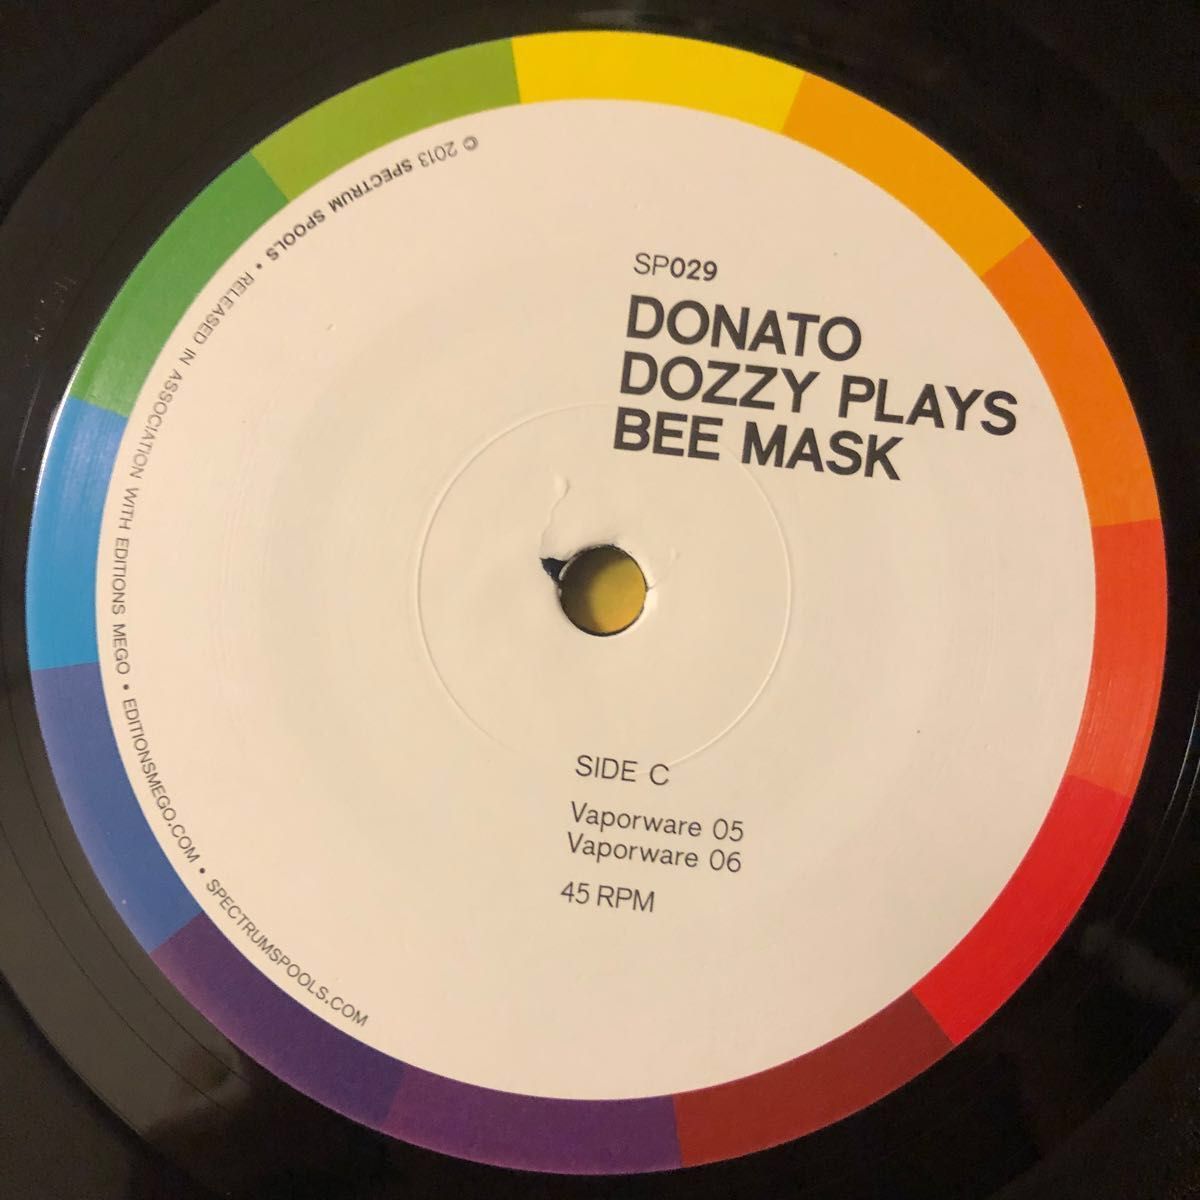 Donato Dozzy Plays Bee Mask レコード アンビエント ドナート・ドジー エレクトロニカ ニューエイジ